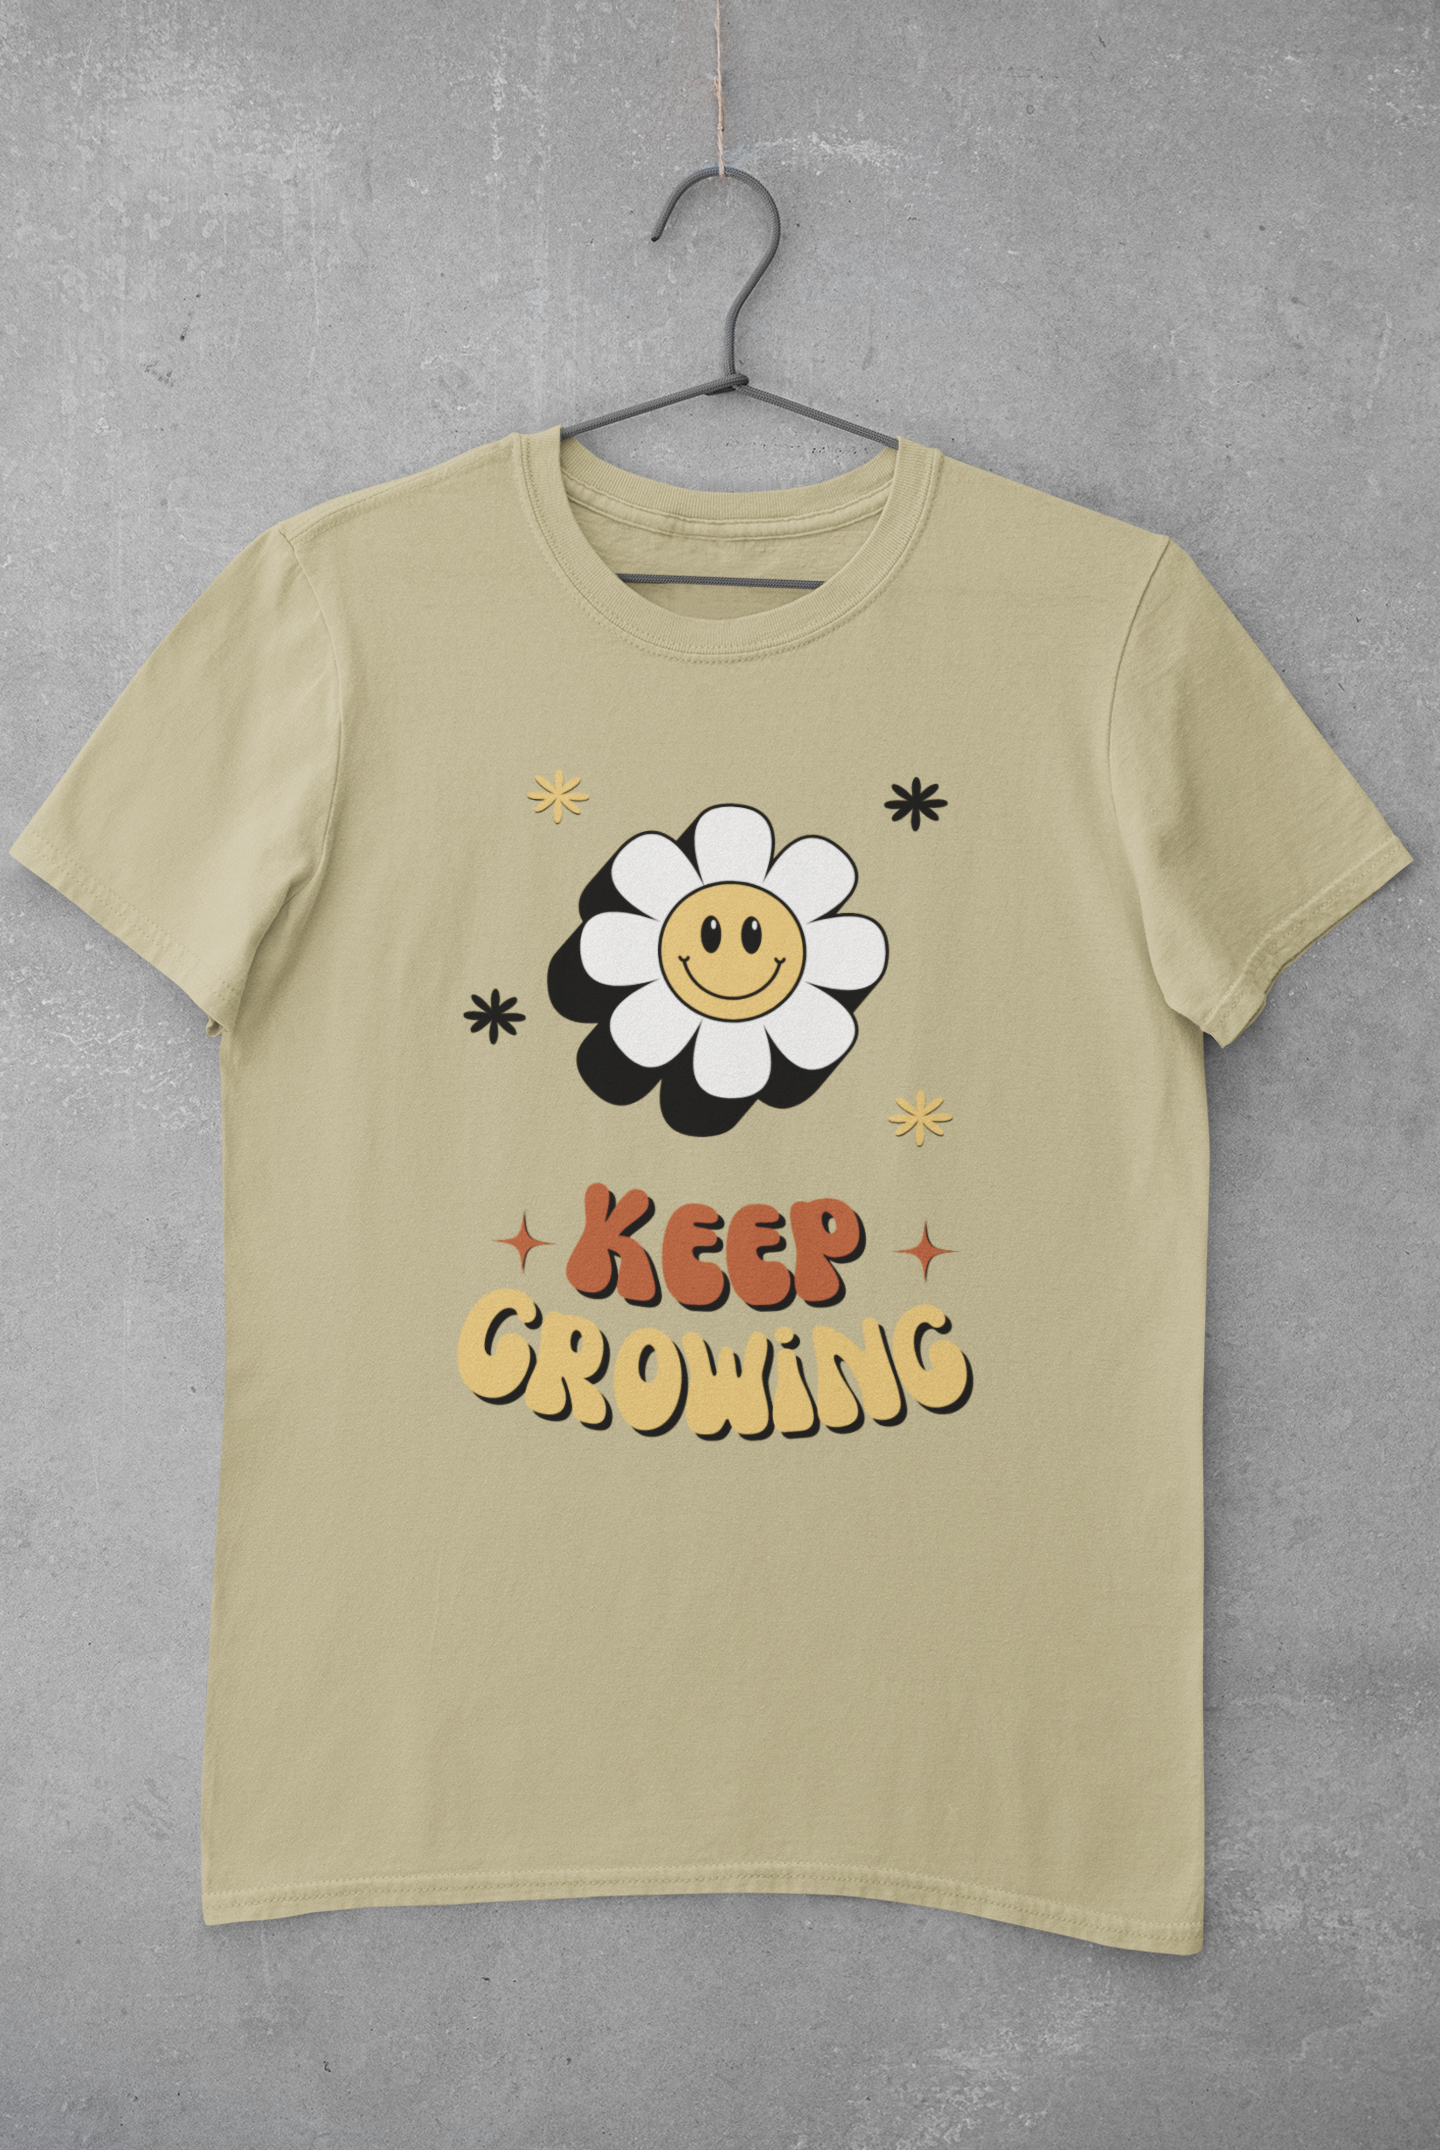 'Keep Growing' T-Shirt